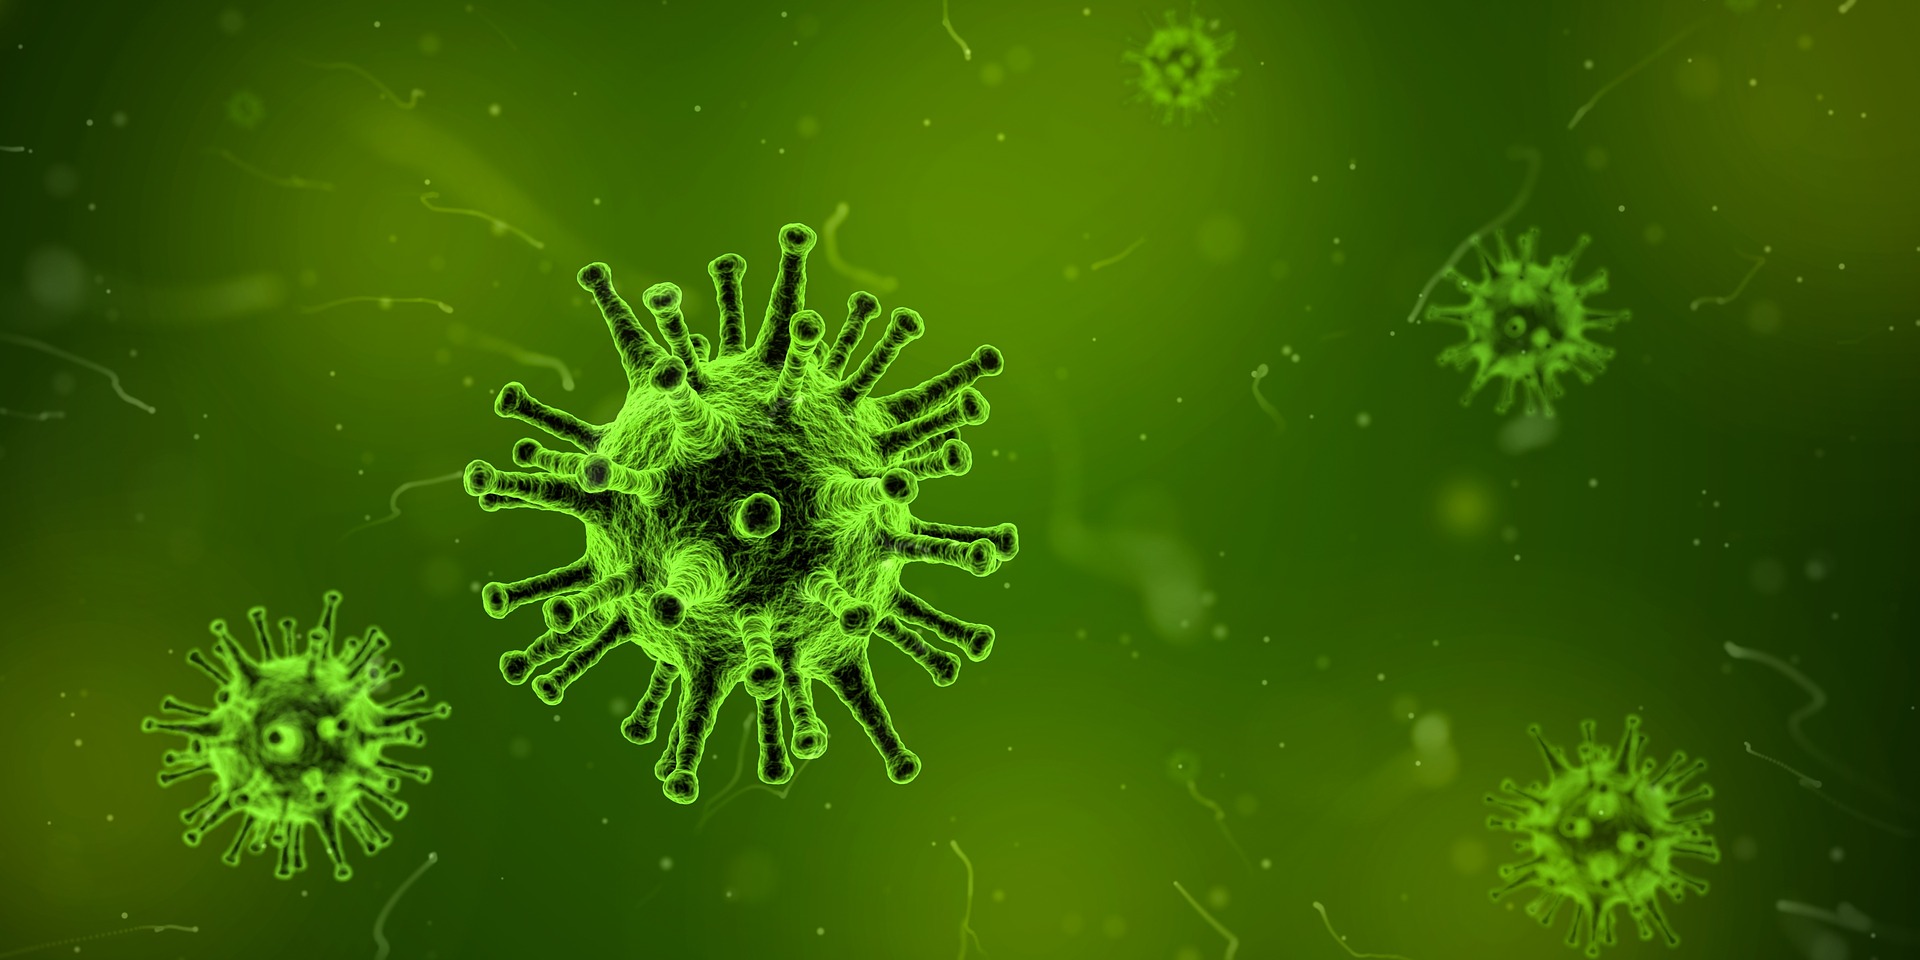 a propagación mundial del virus de la influenza aviar altamente patógena H5N8 es un grave problema de salud pública 